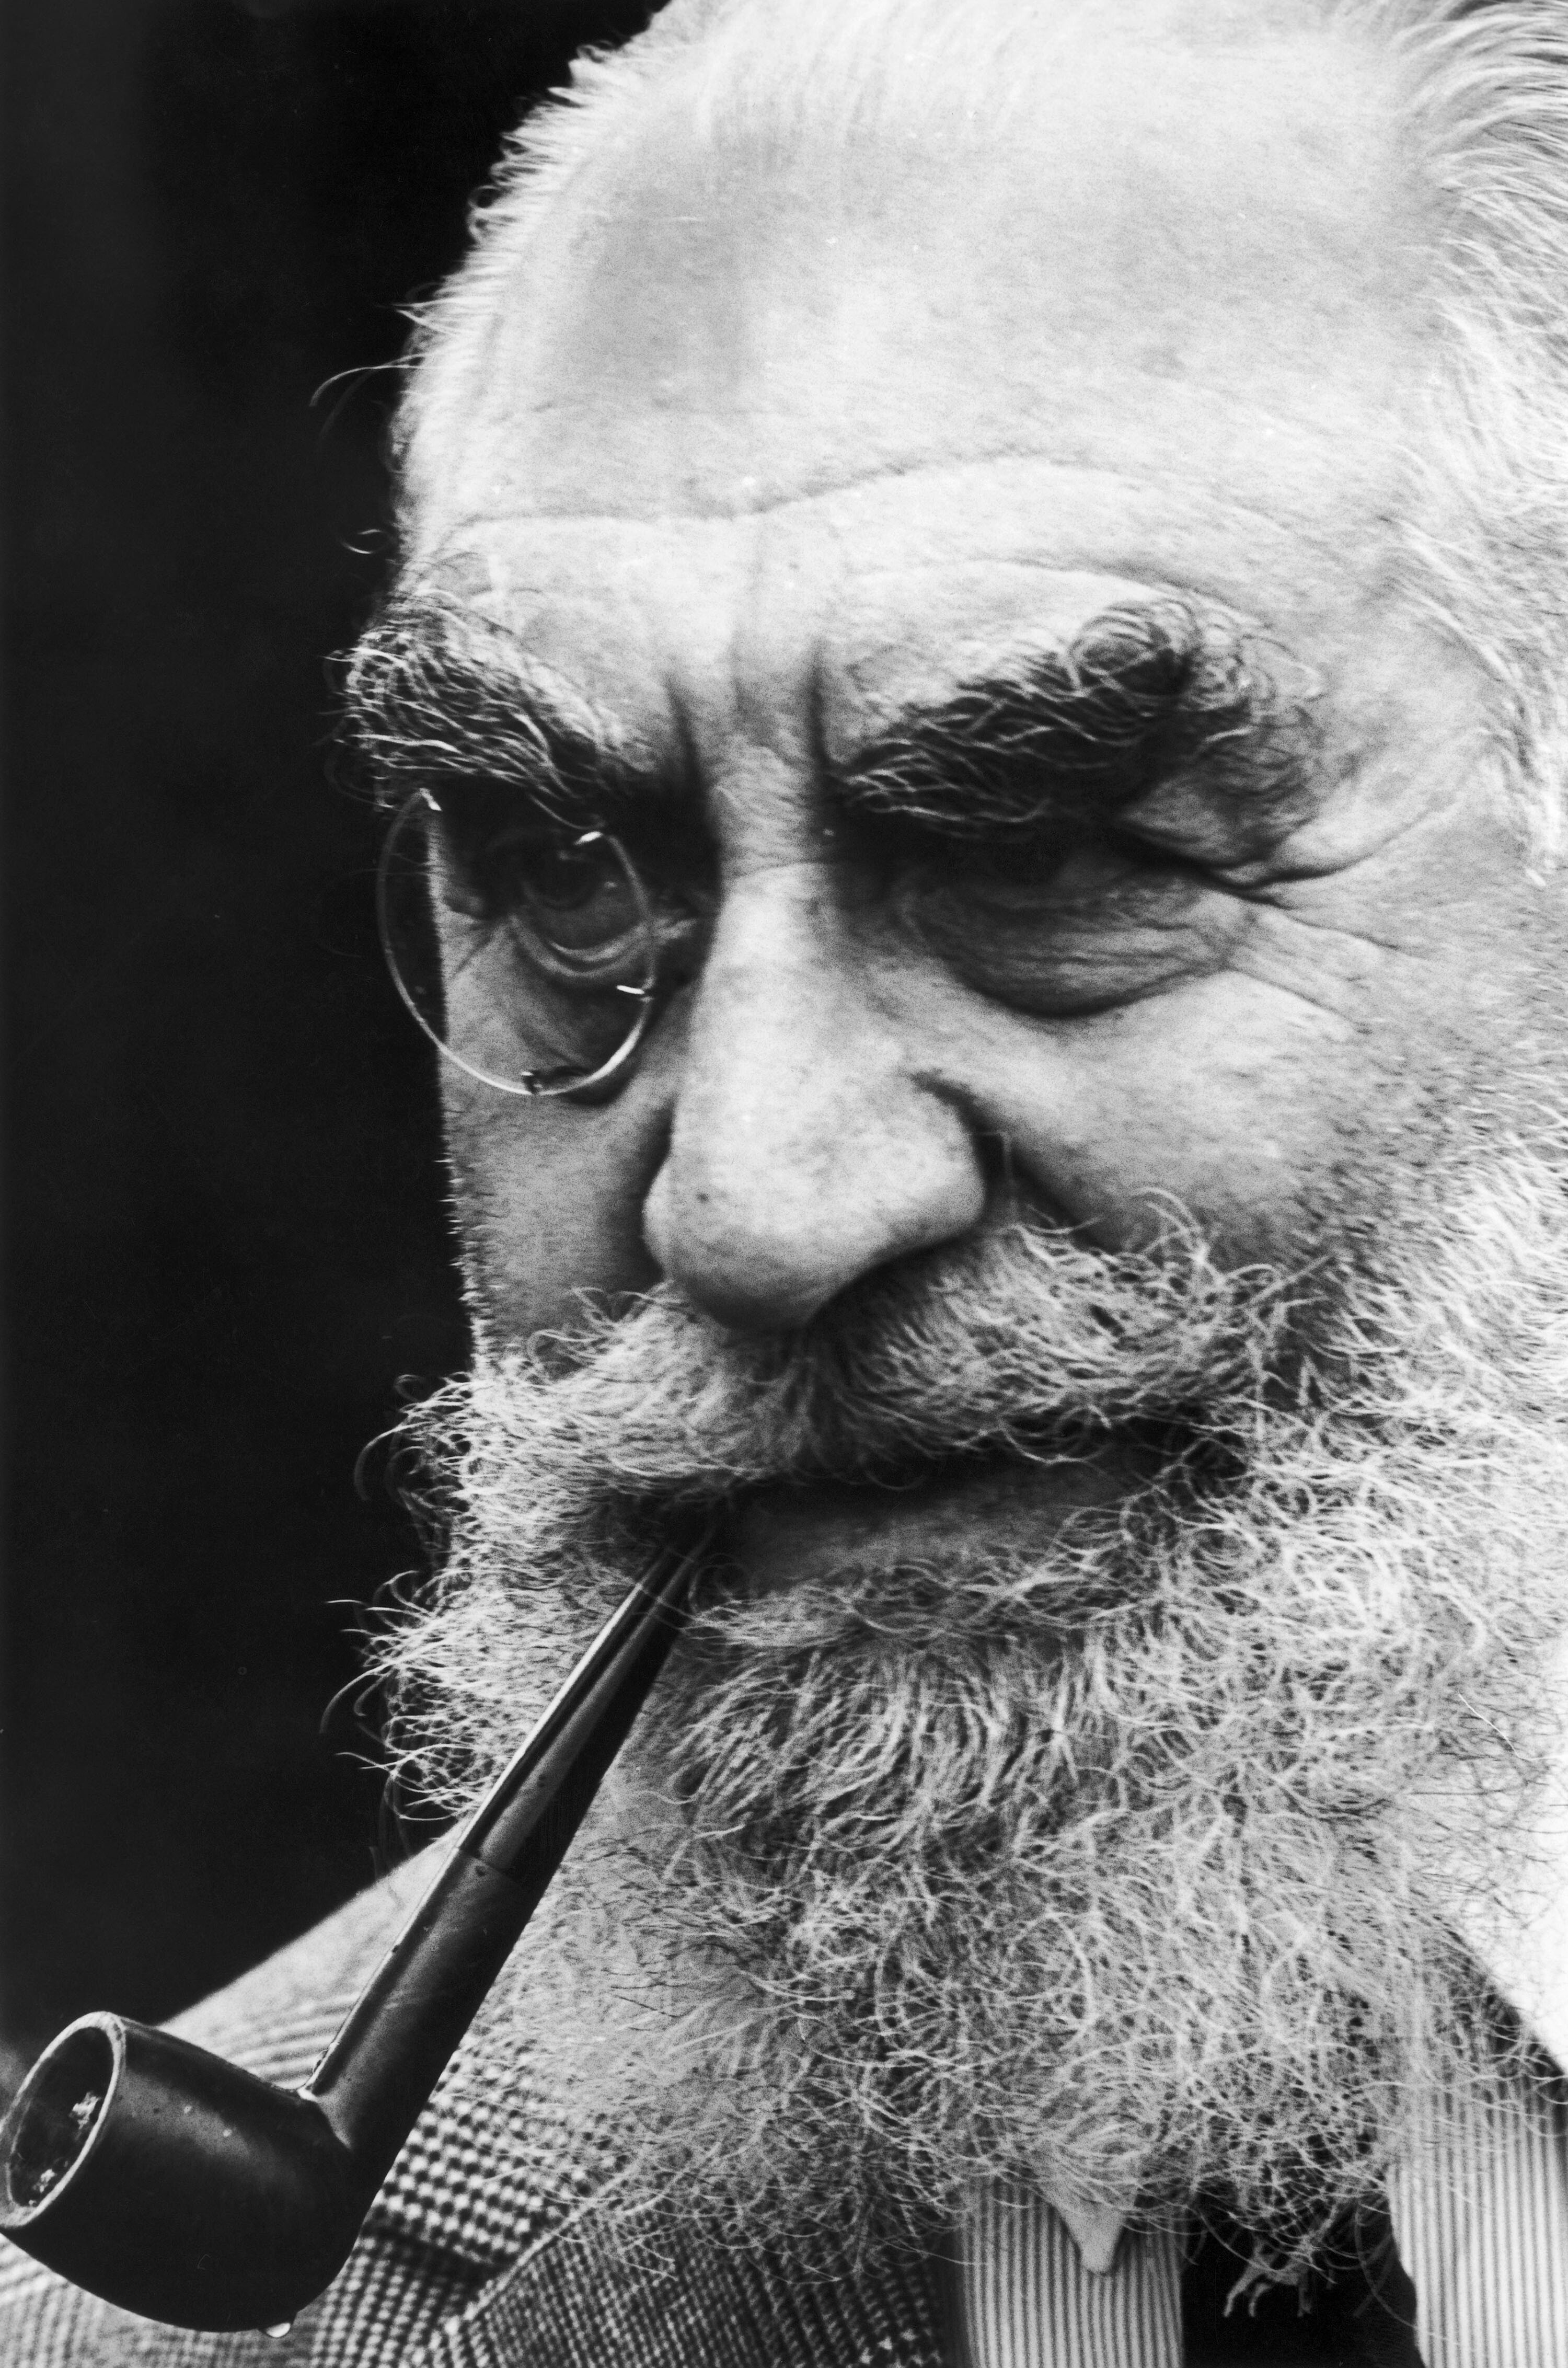 Calouste Sarkis Gulbenkian dapat dilihat dengan pipa di mulutnya, pada tahun 1960. (Getty Images)